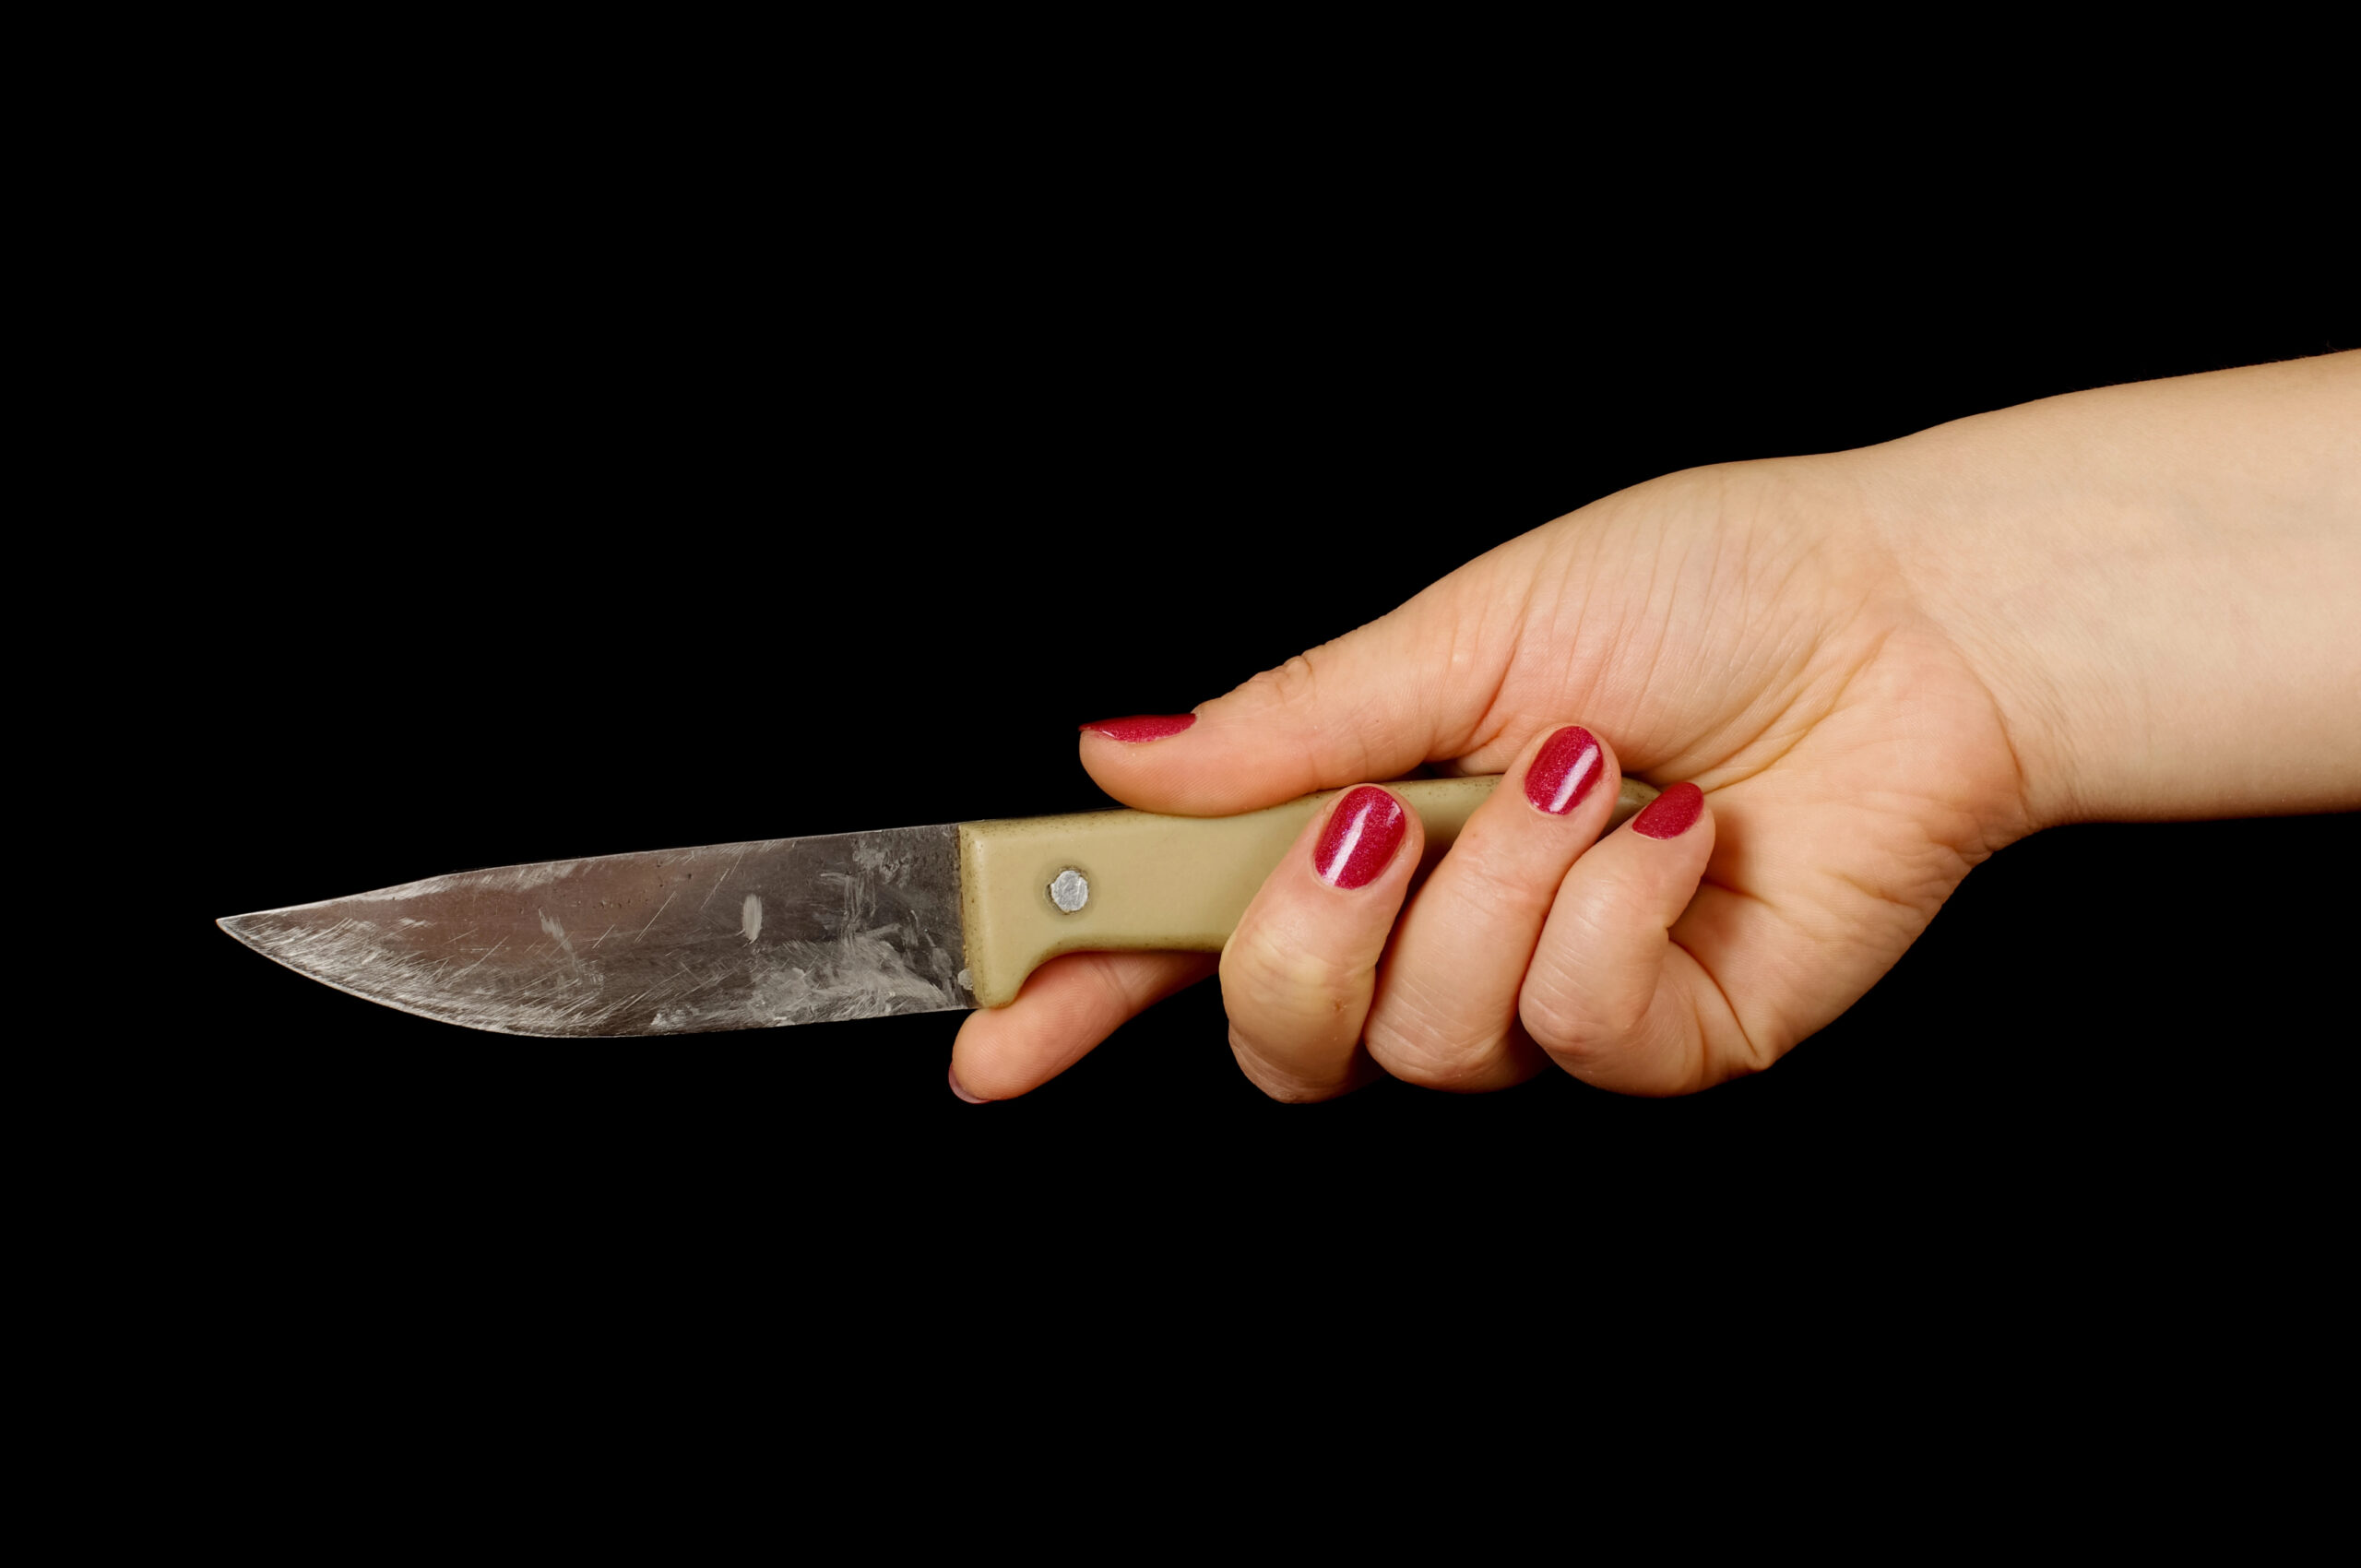 Die Angeklagte soll ihrem Ex-Partner ein Messer mehrfach ins Bein gerammt haben (Symbolfoto).